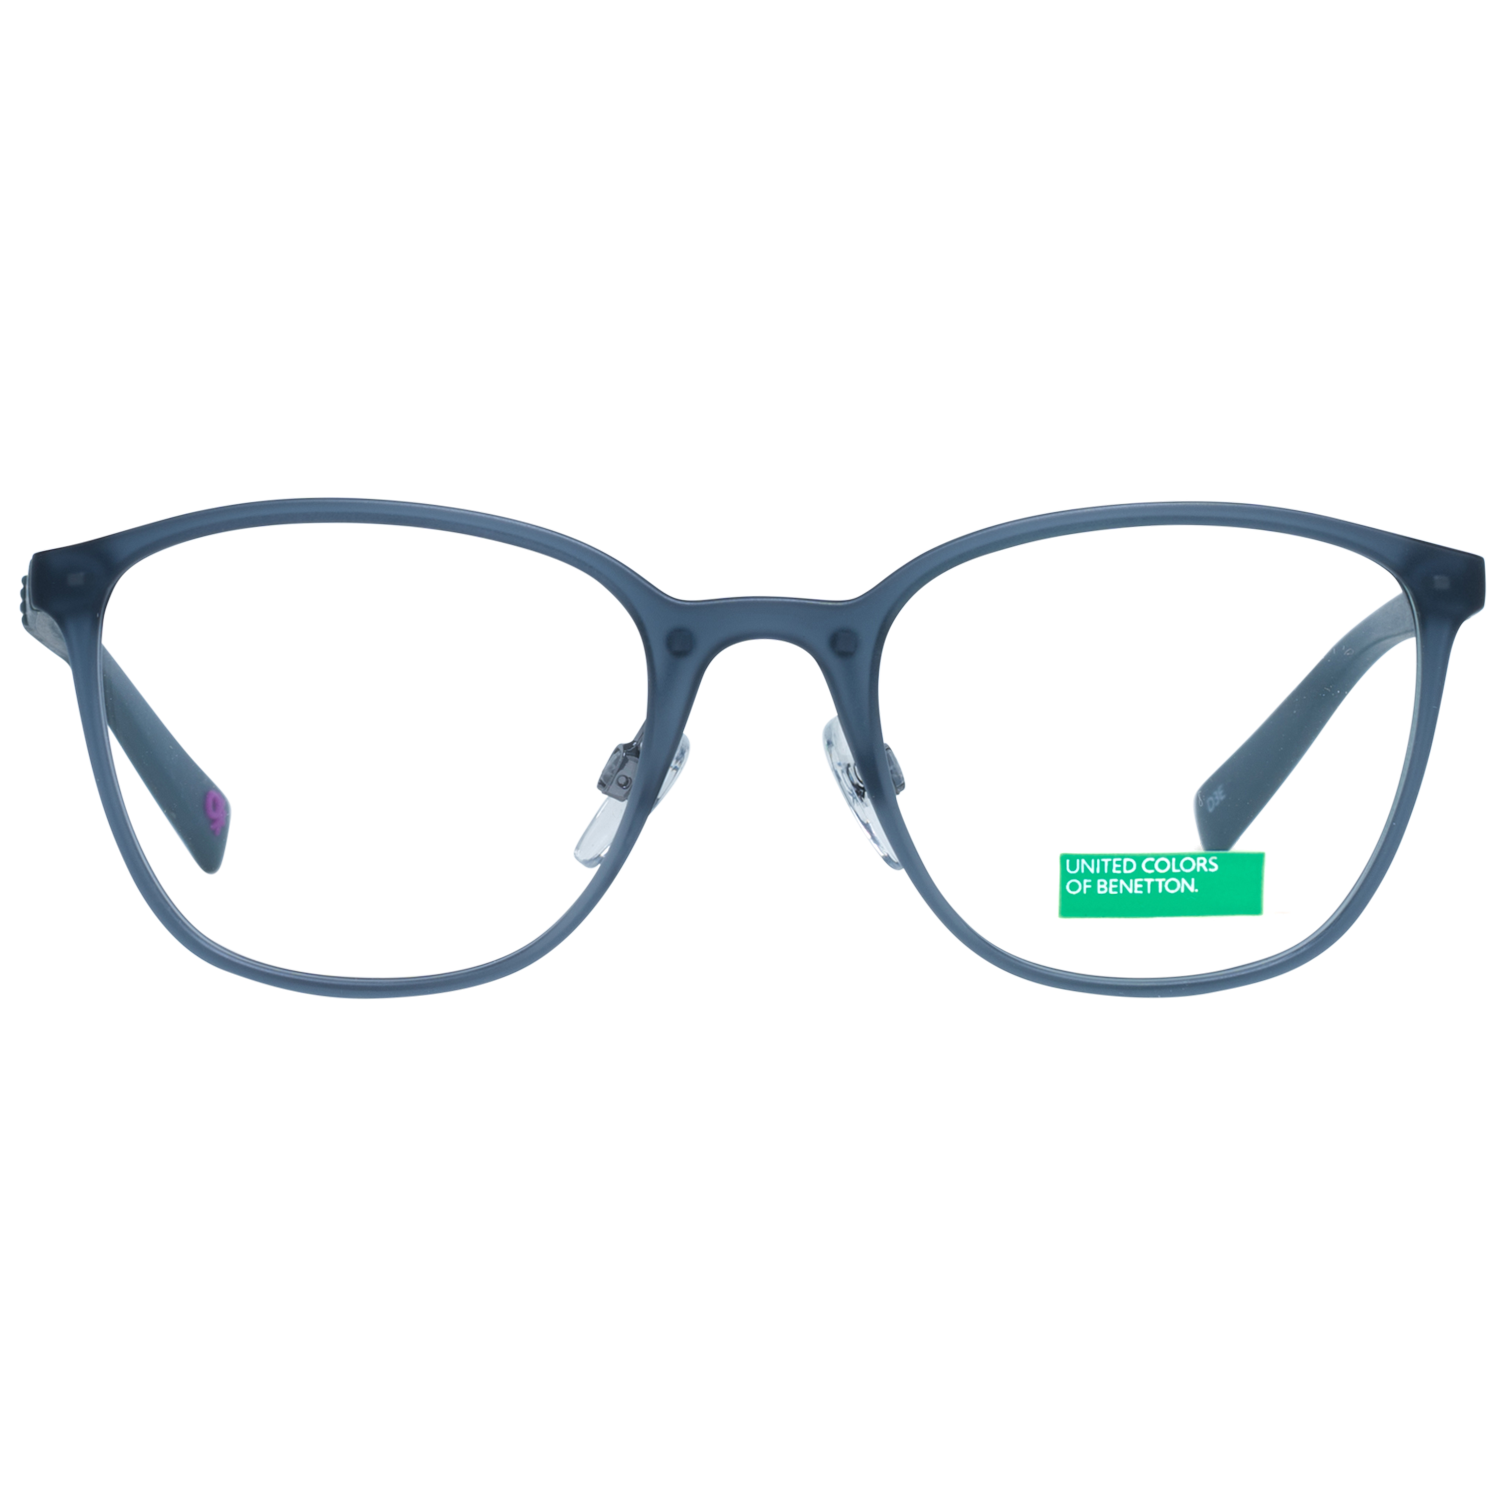 Benetton Frames Benetton Glasses Frames BEO1013 921 50 Eyeglasses Eyewear UK USA Australia 